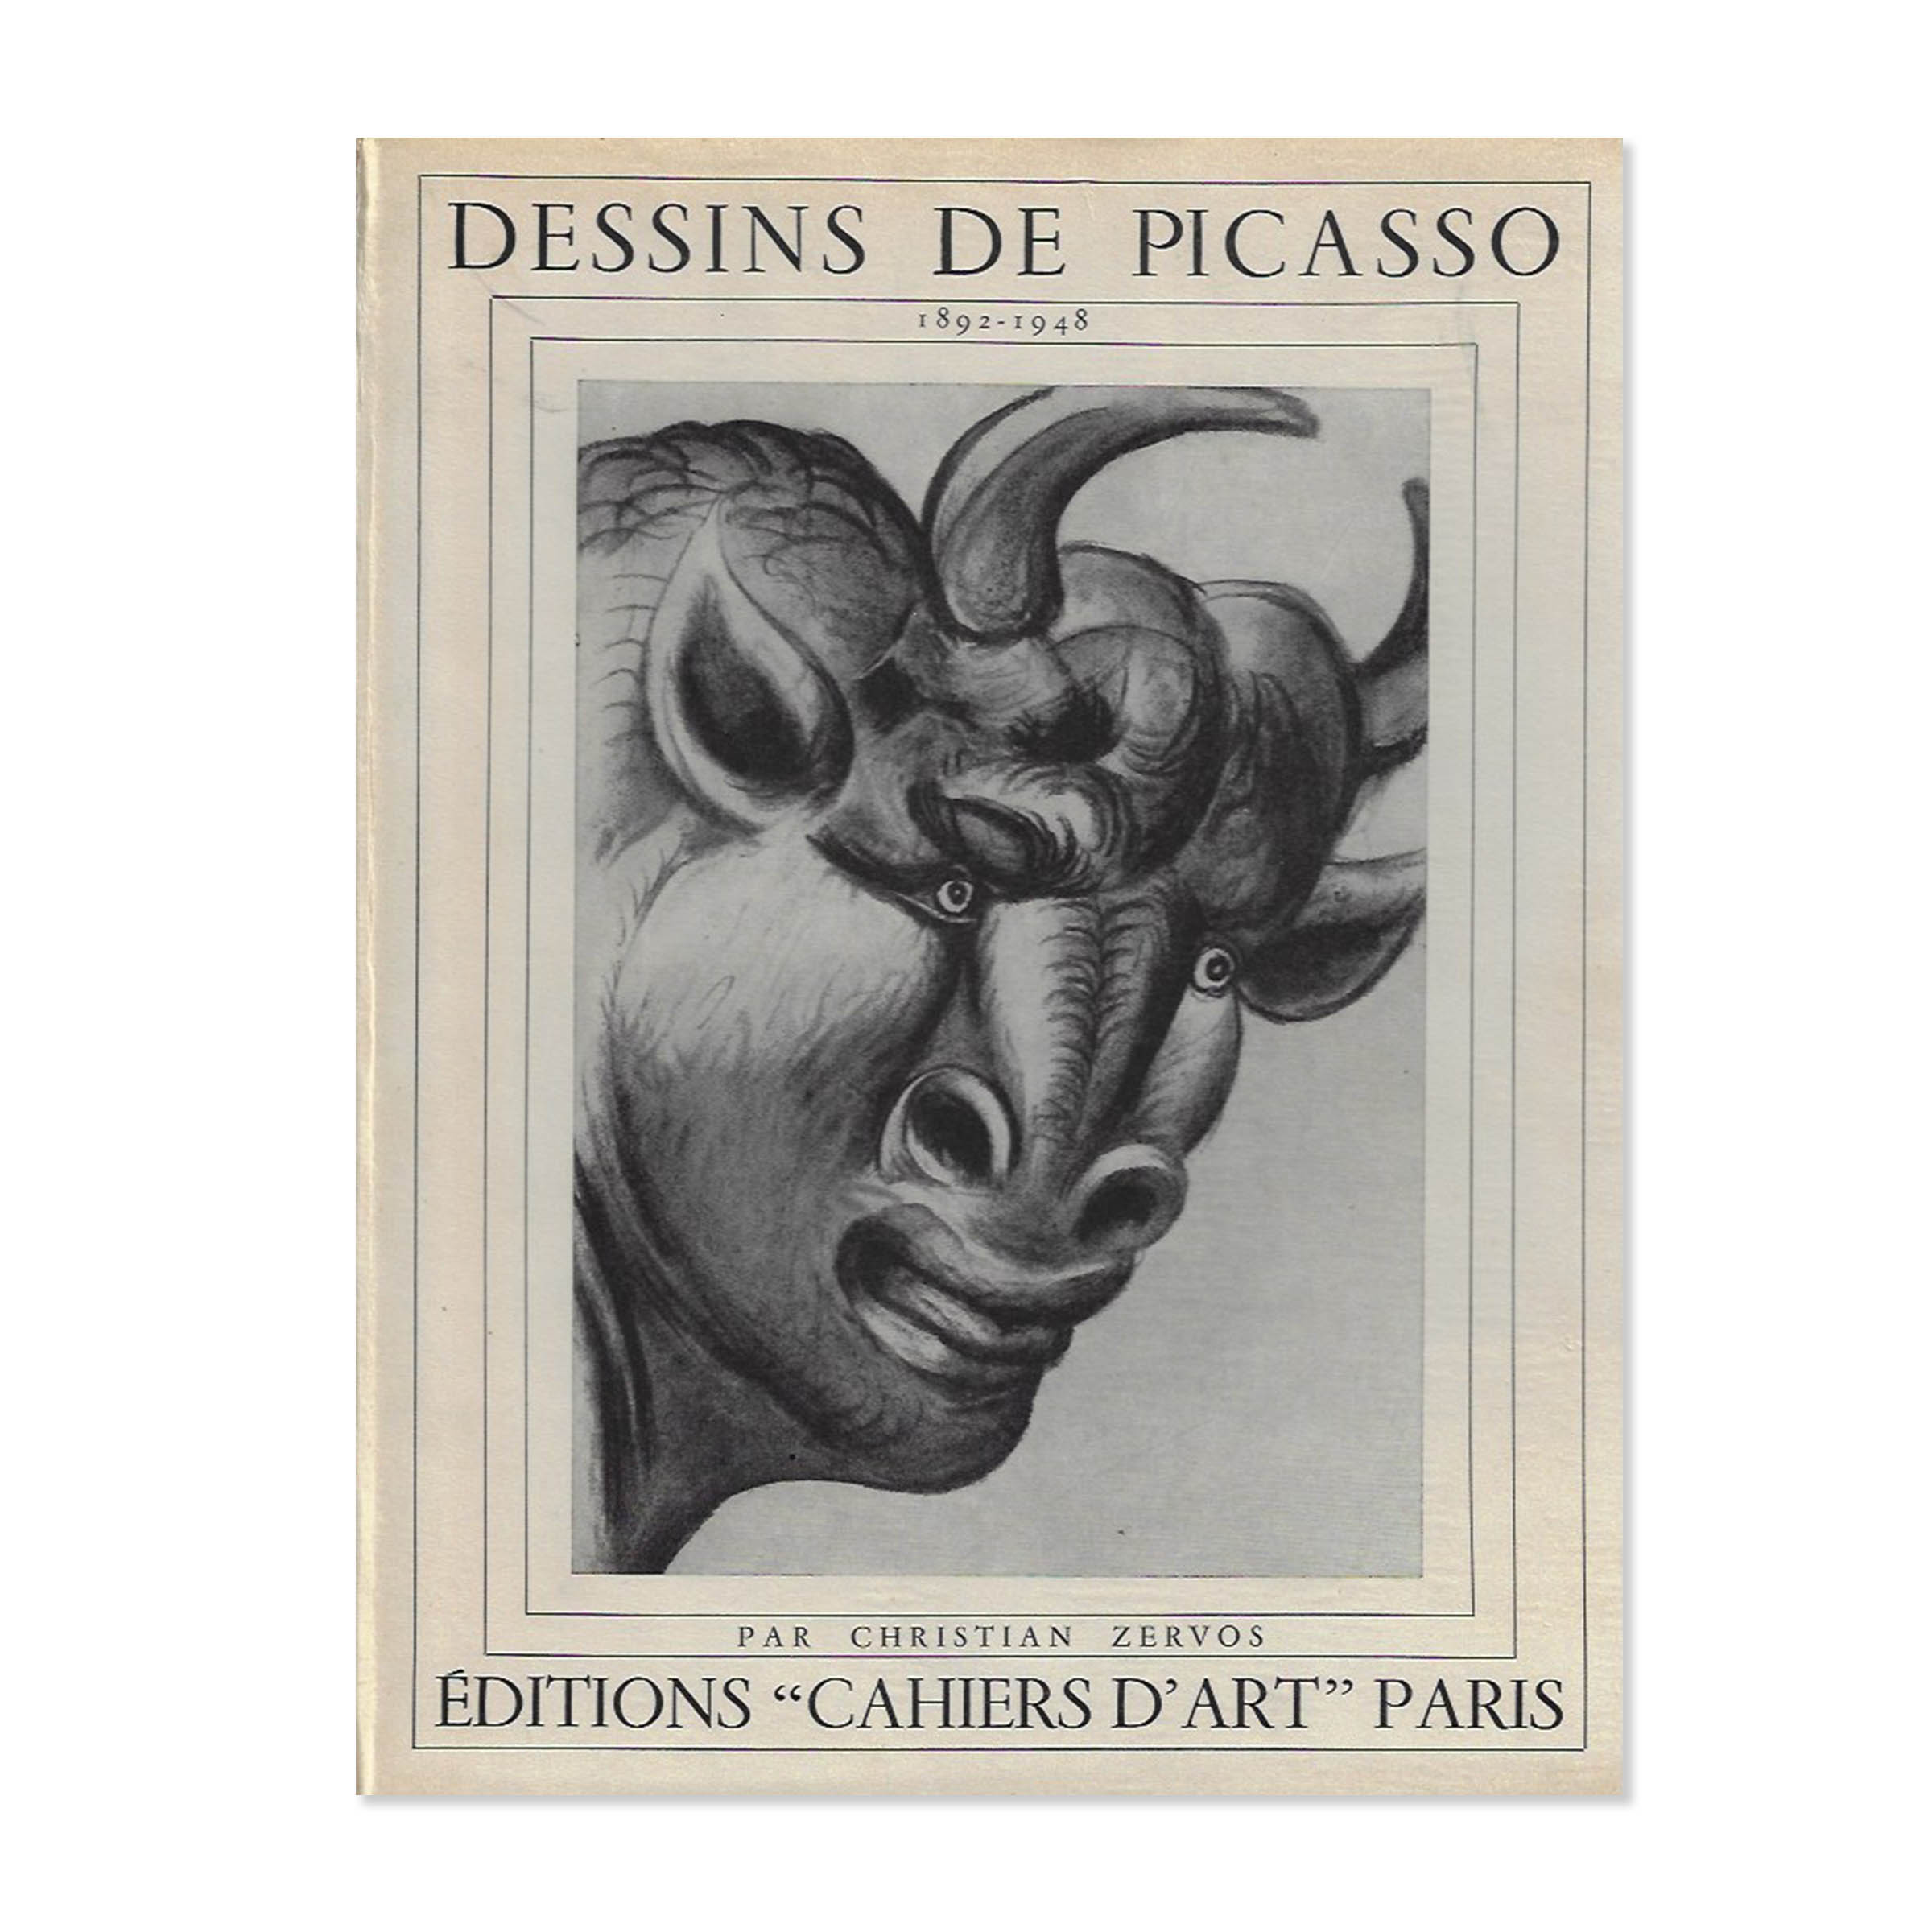 Dessins de Picasso. Cover view